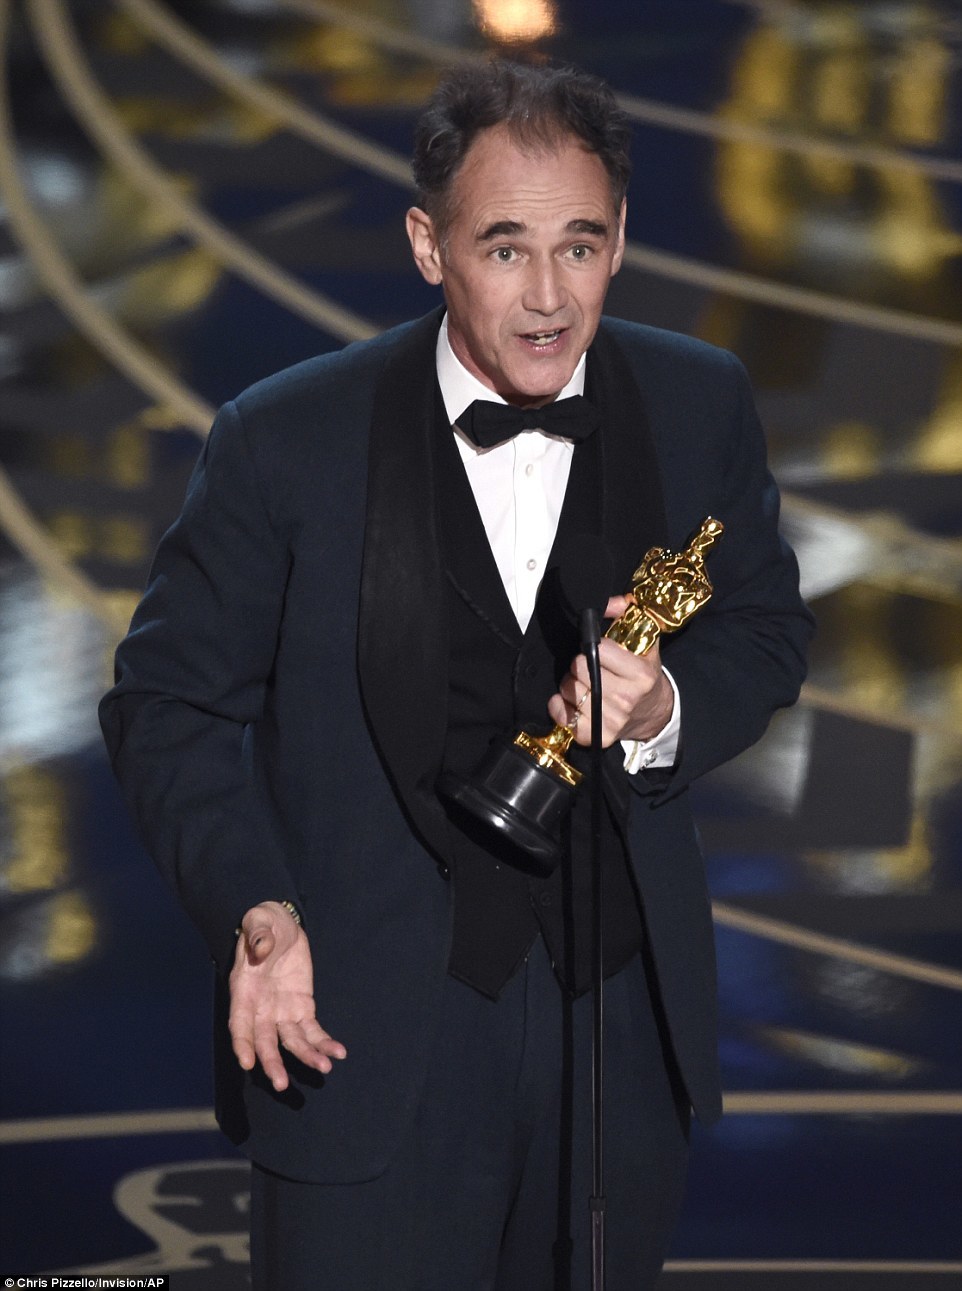 88-я церемония награждения «Оскар» 2016: итоги